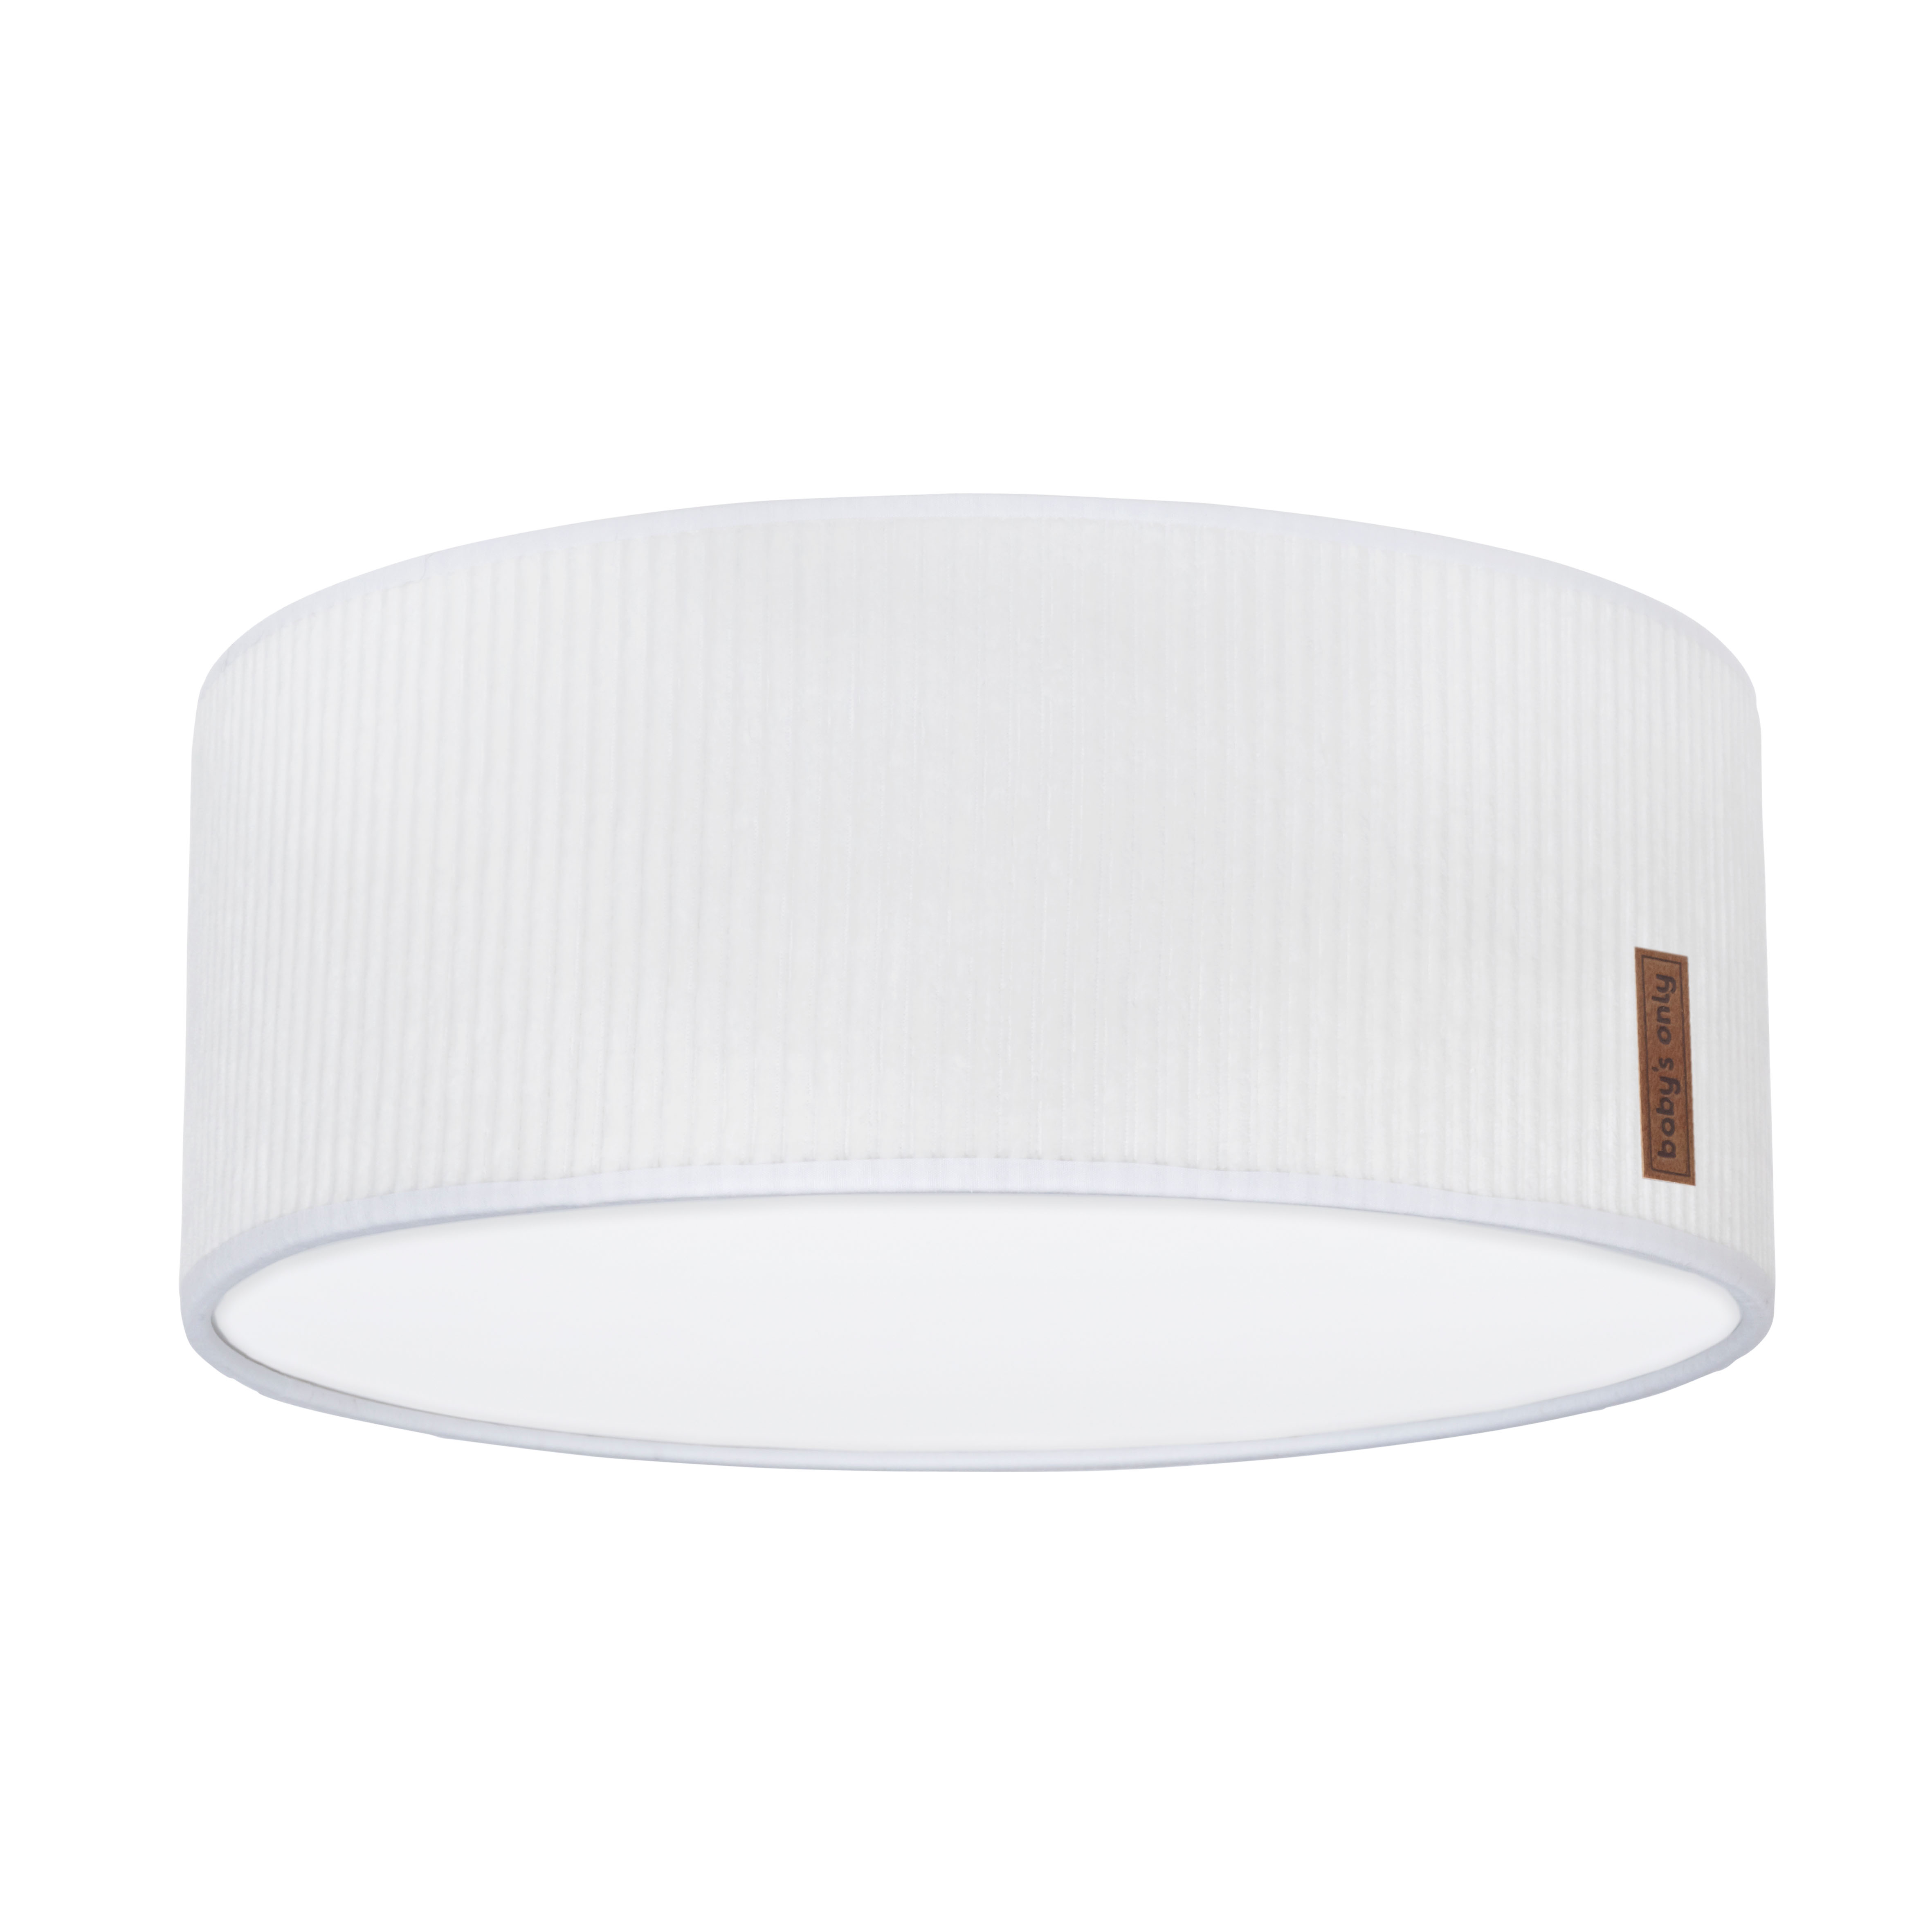 Ceiling lamp Sense white - Ø35 cm